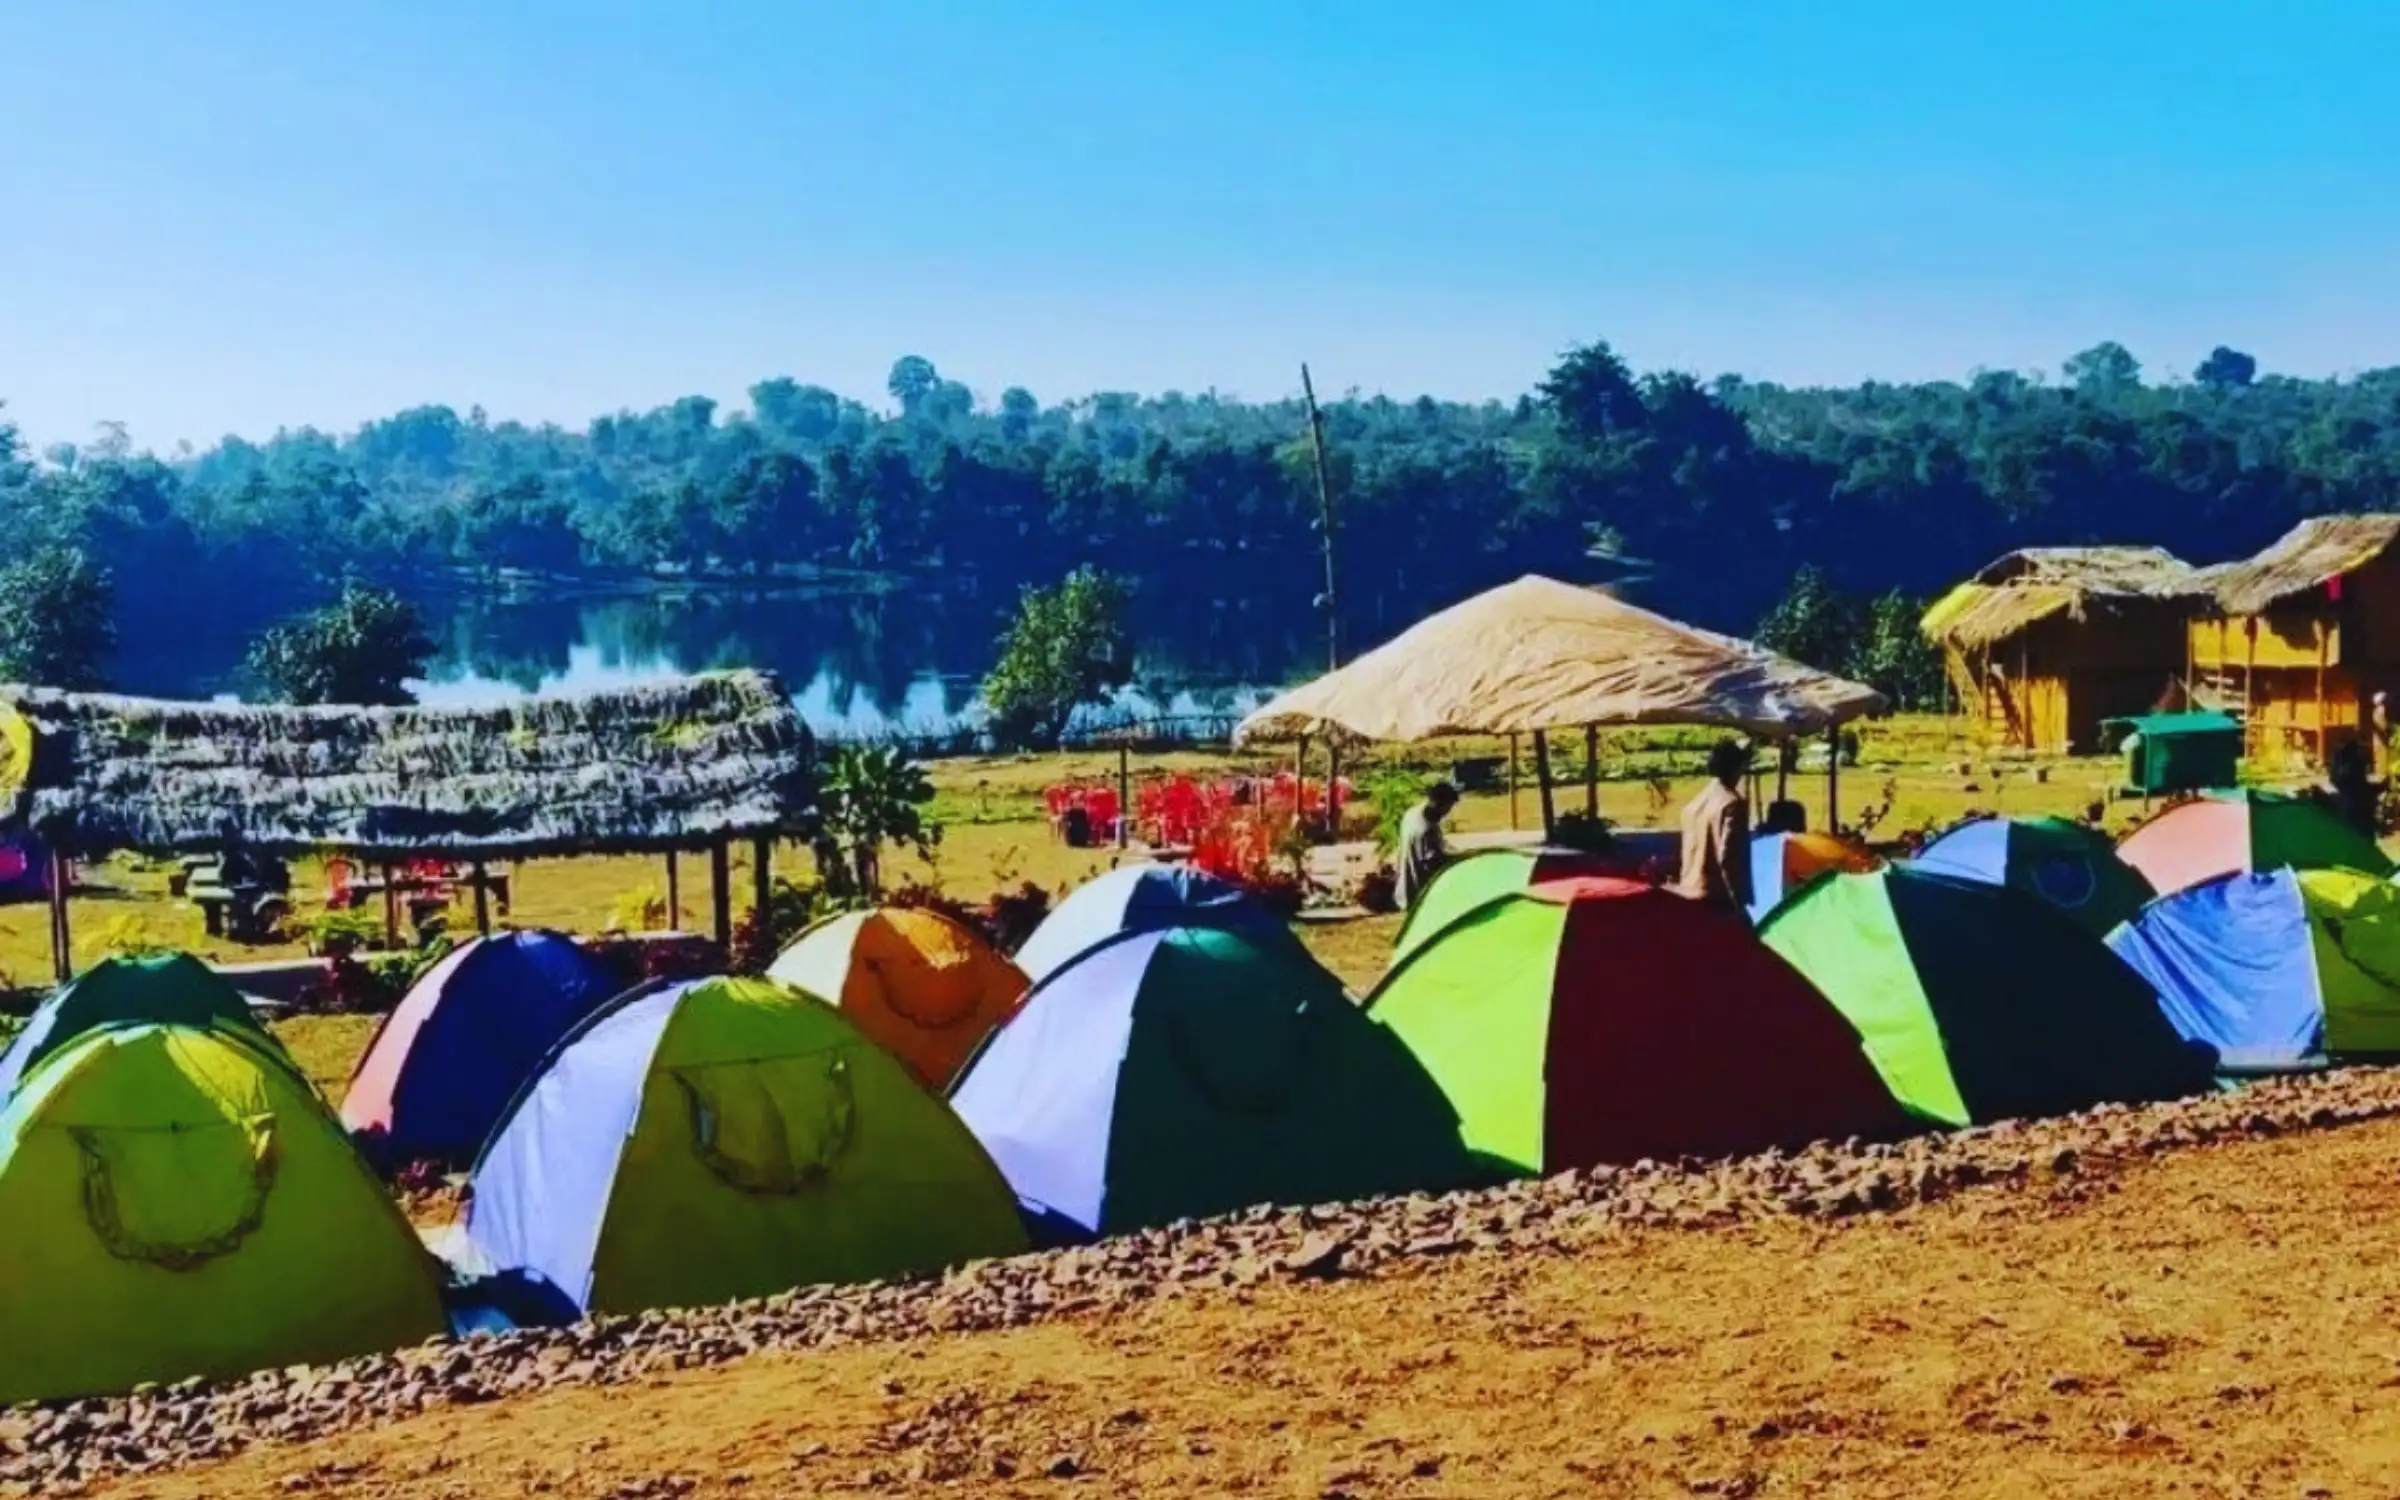 Dera Jungle Camp near Indore